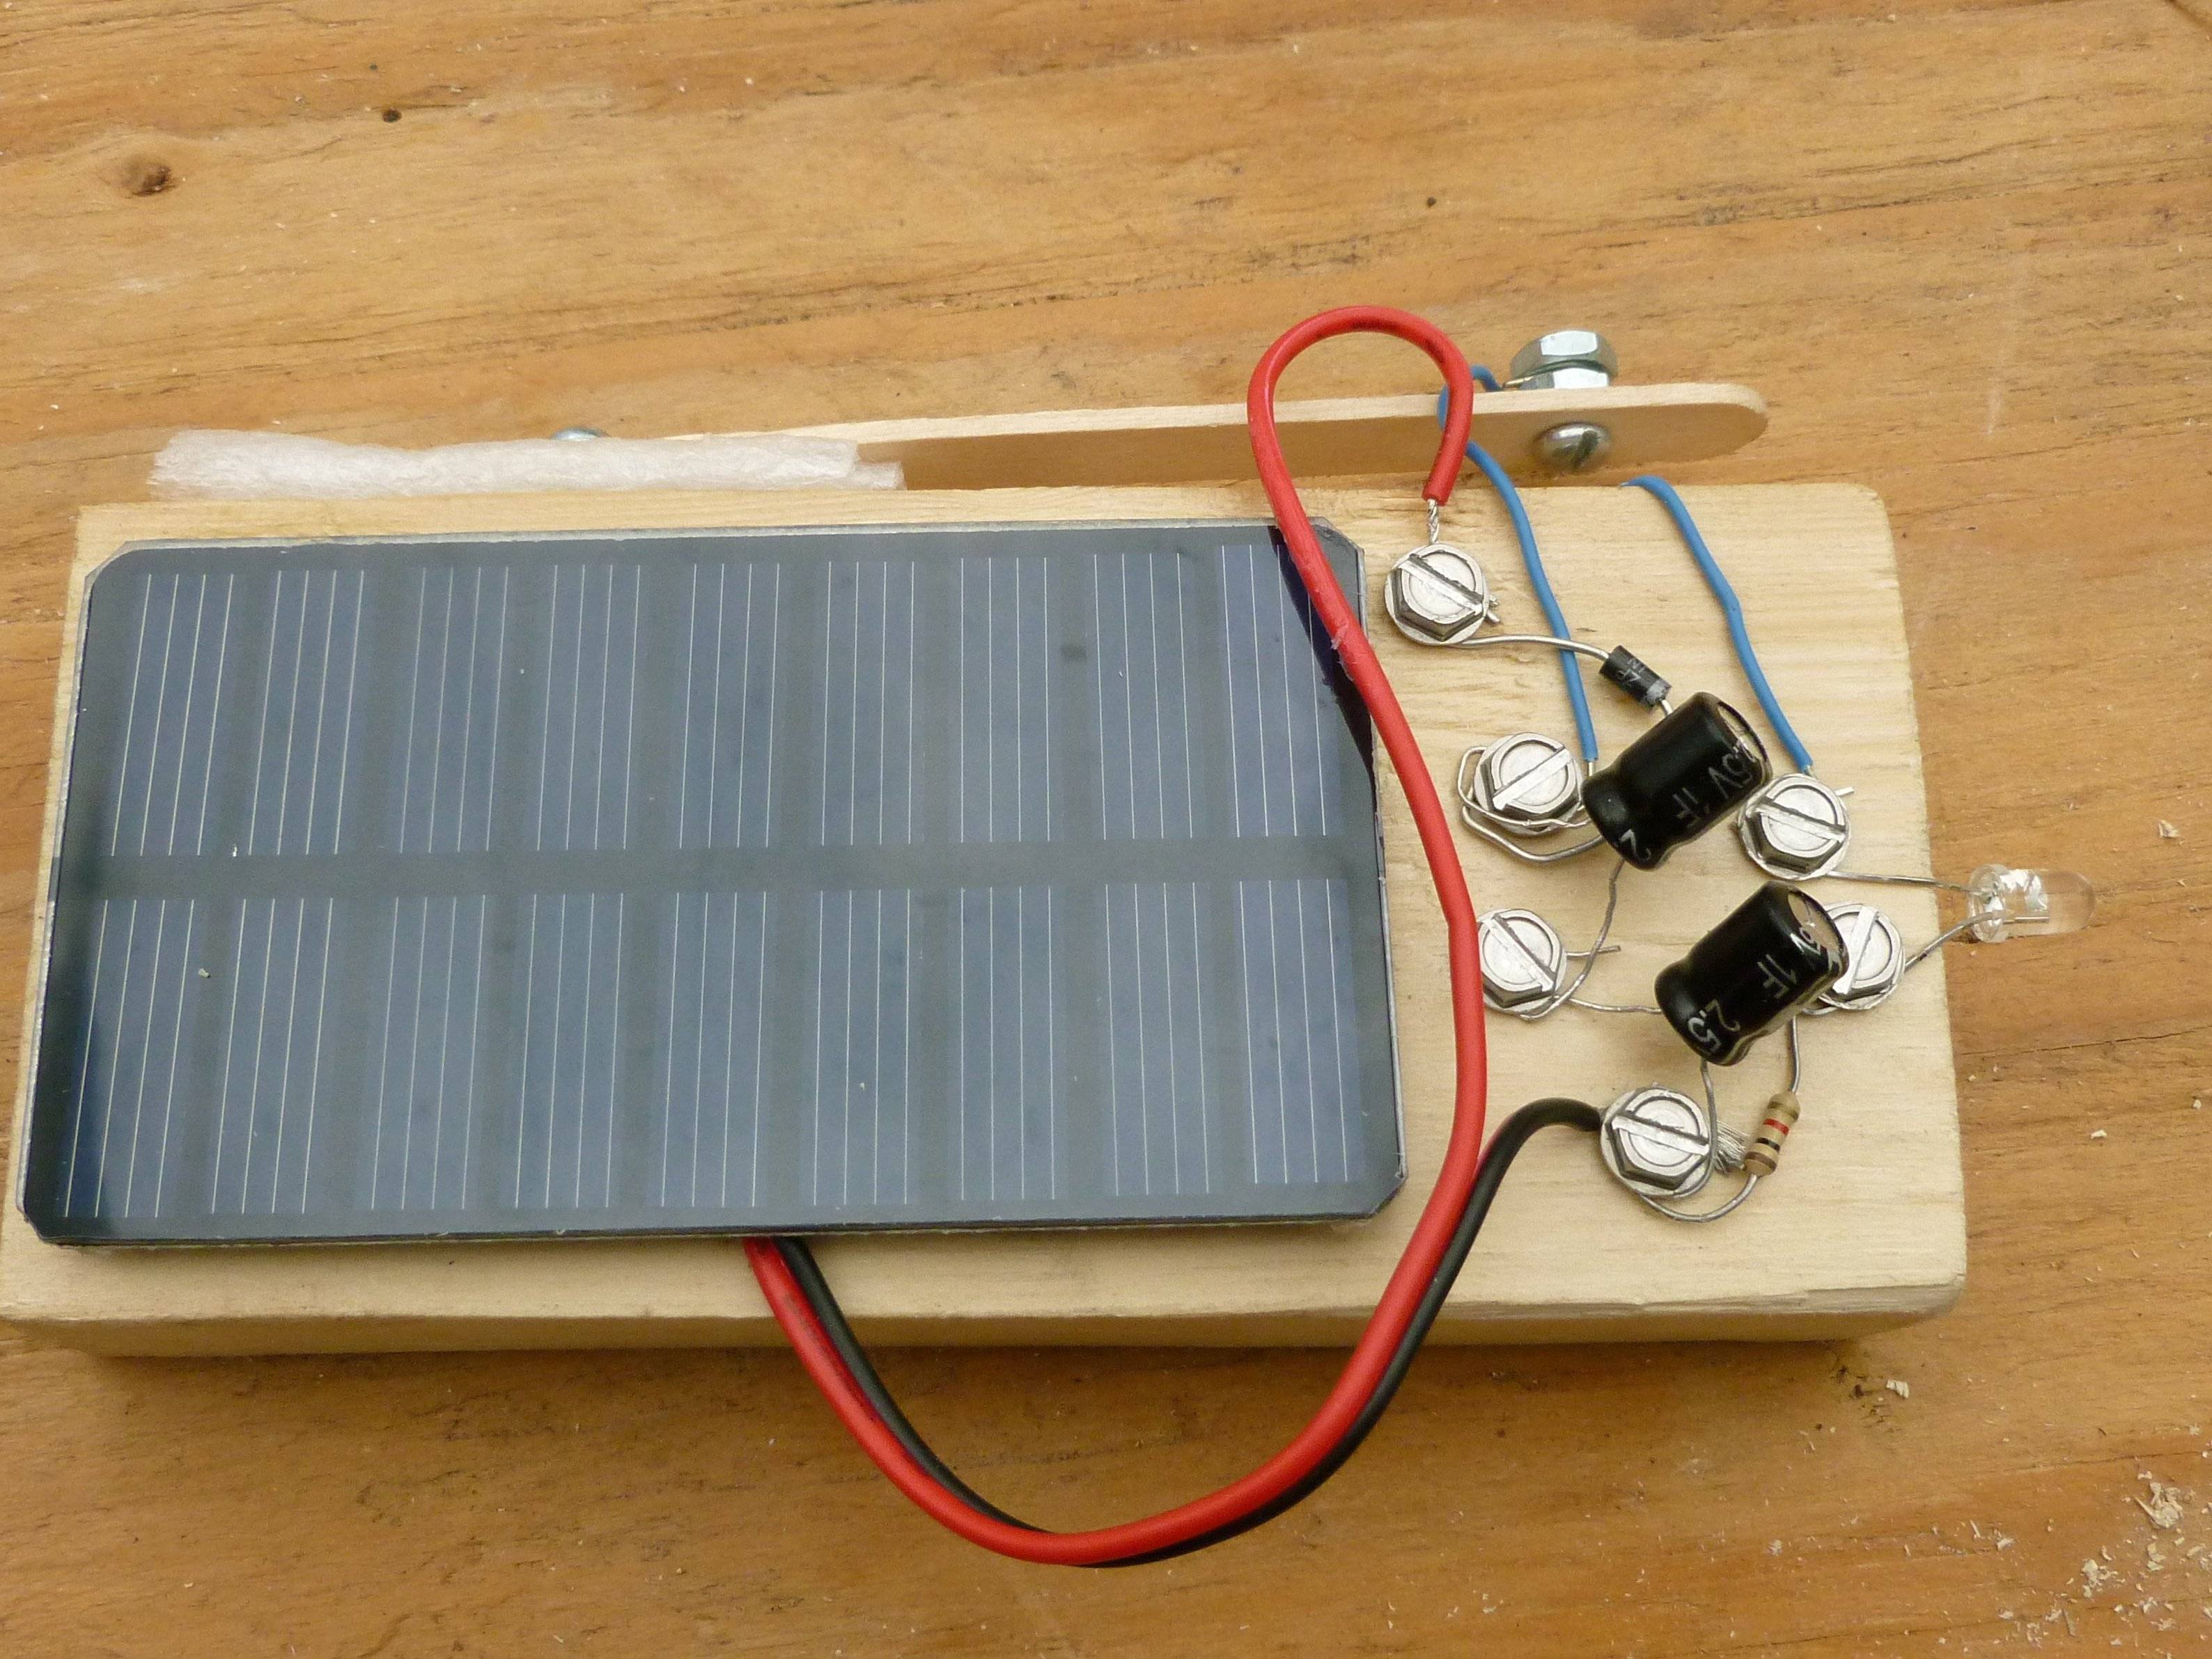 Как сделать солнечную батарею для дома своими руками: установка панели